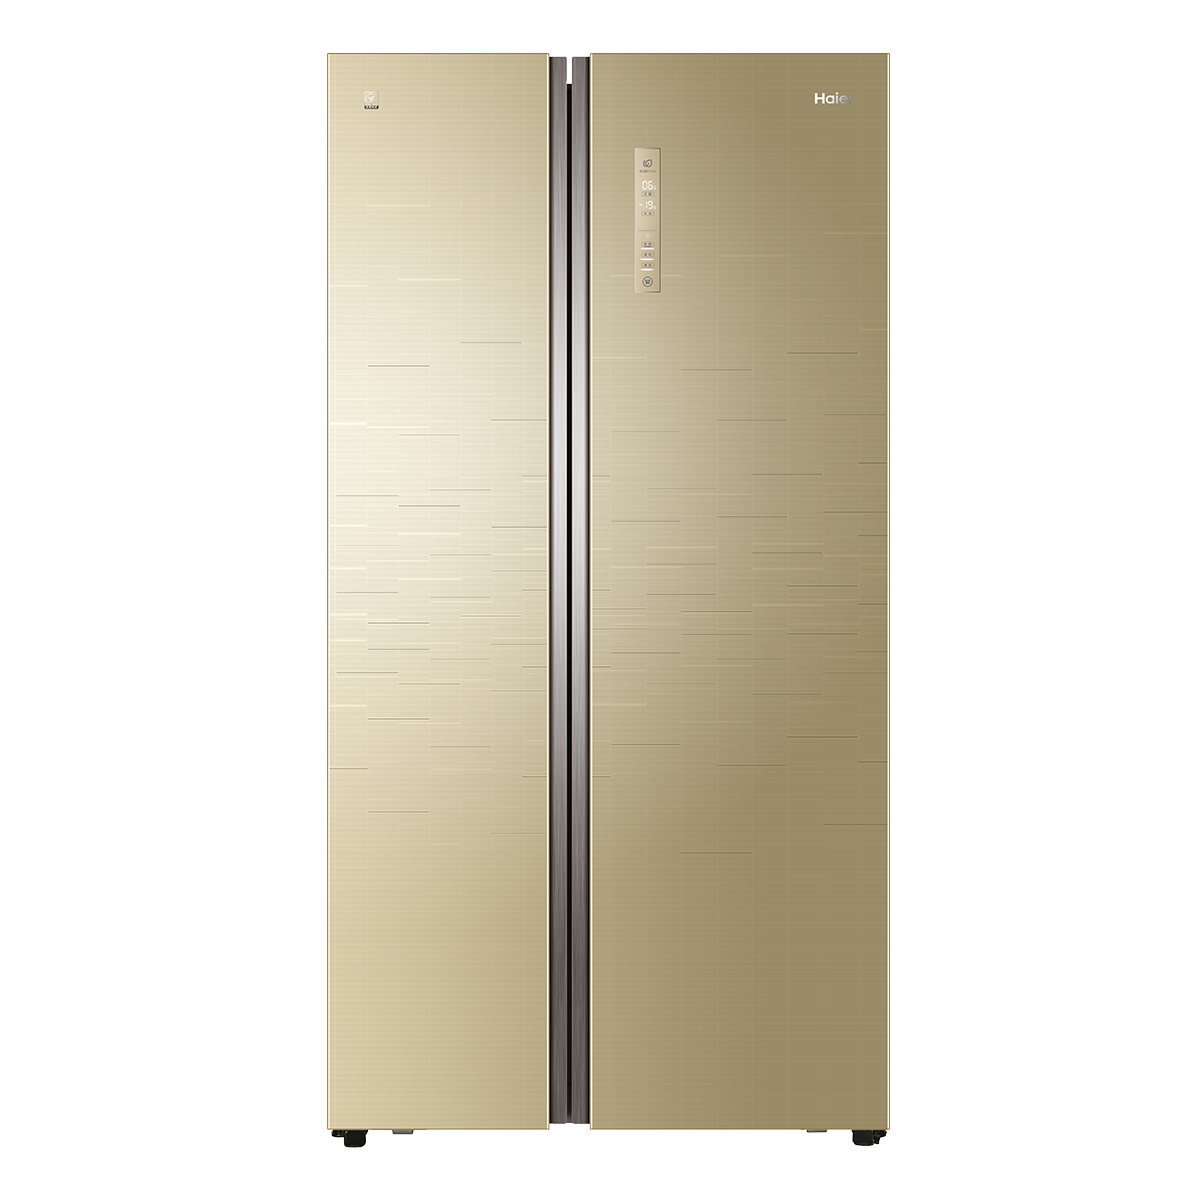 海尔Haier冰箱 BCD-525WDGB 说明书